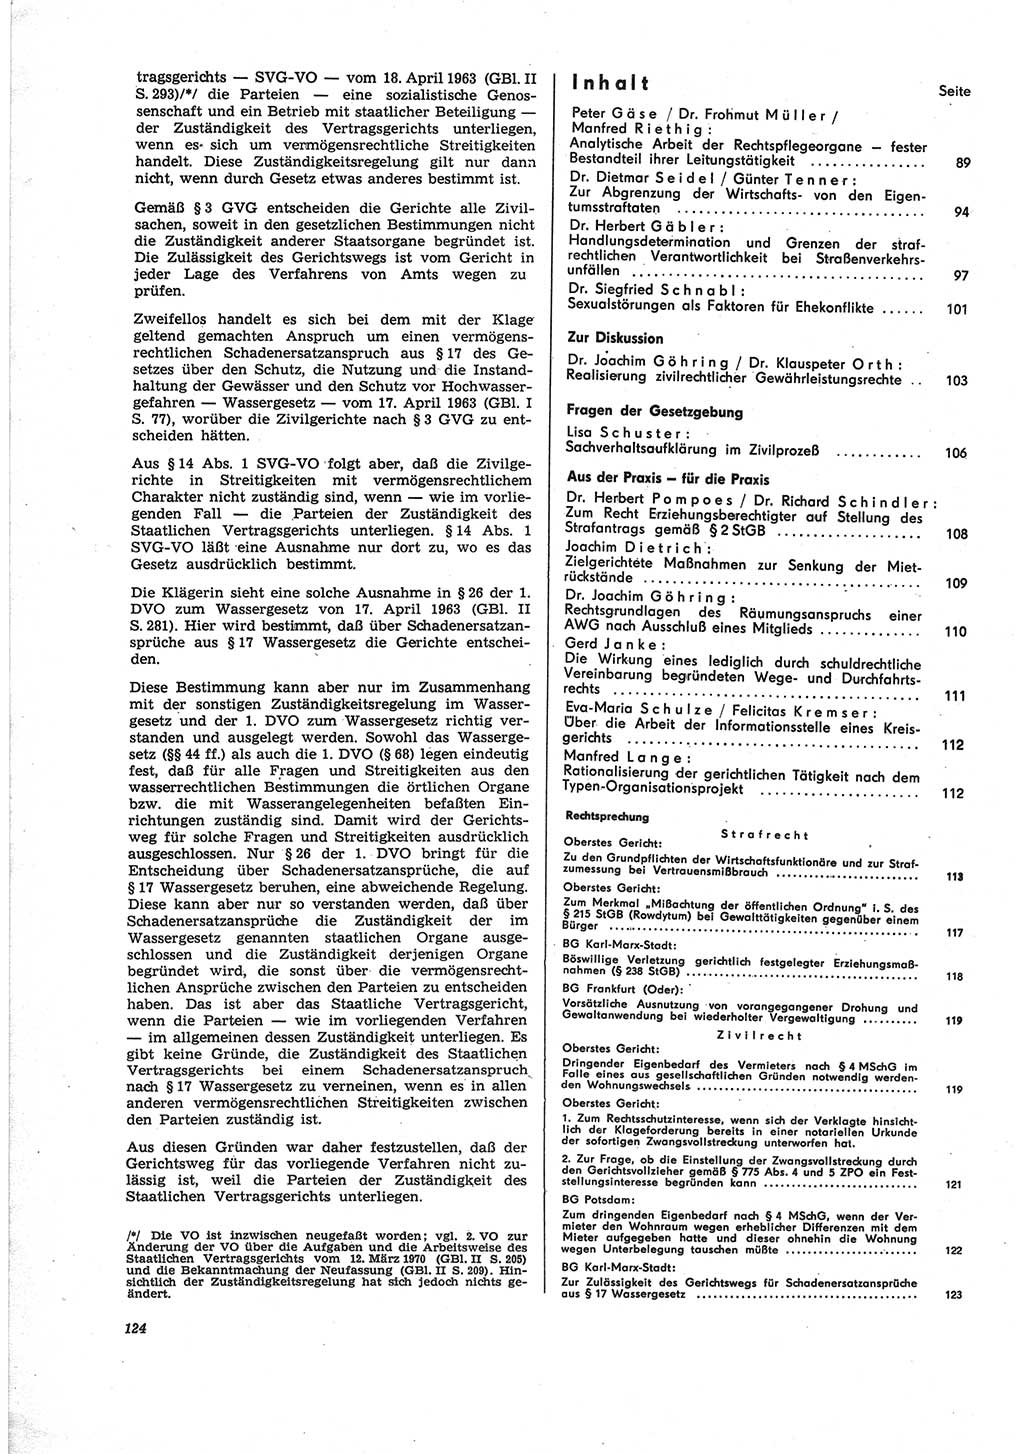 Neue Justiz (NJ), Zeitschrift für Recht und Rechtswissenschaft [Deutsche Demokratische Republik (DDR)], 25. Jahrgang 1971, Seite 124 (NJ DDR 1971, S. 124)